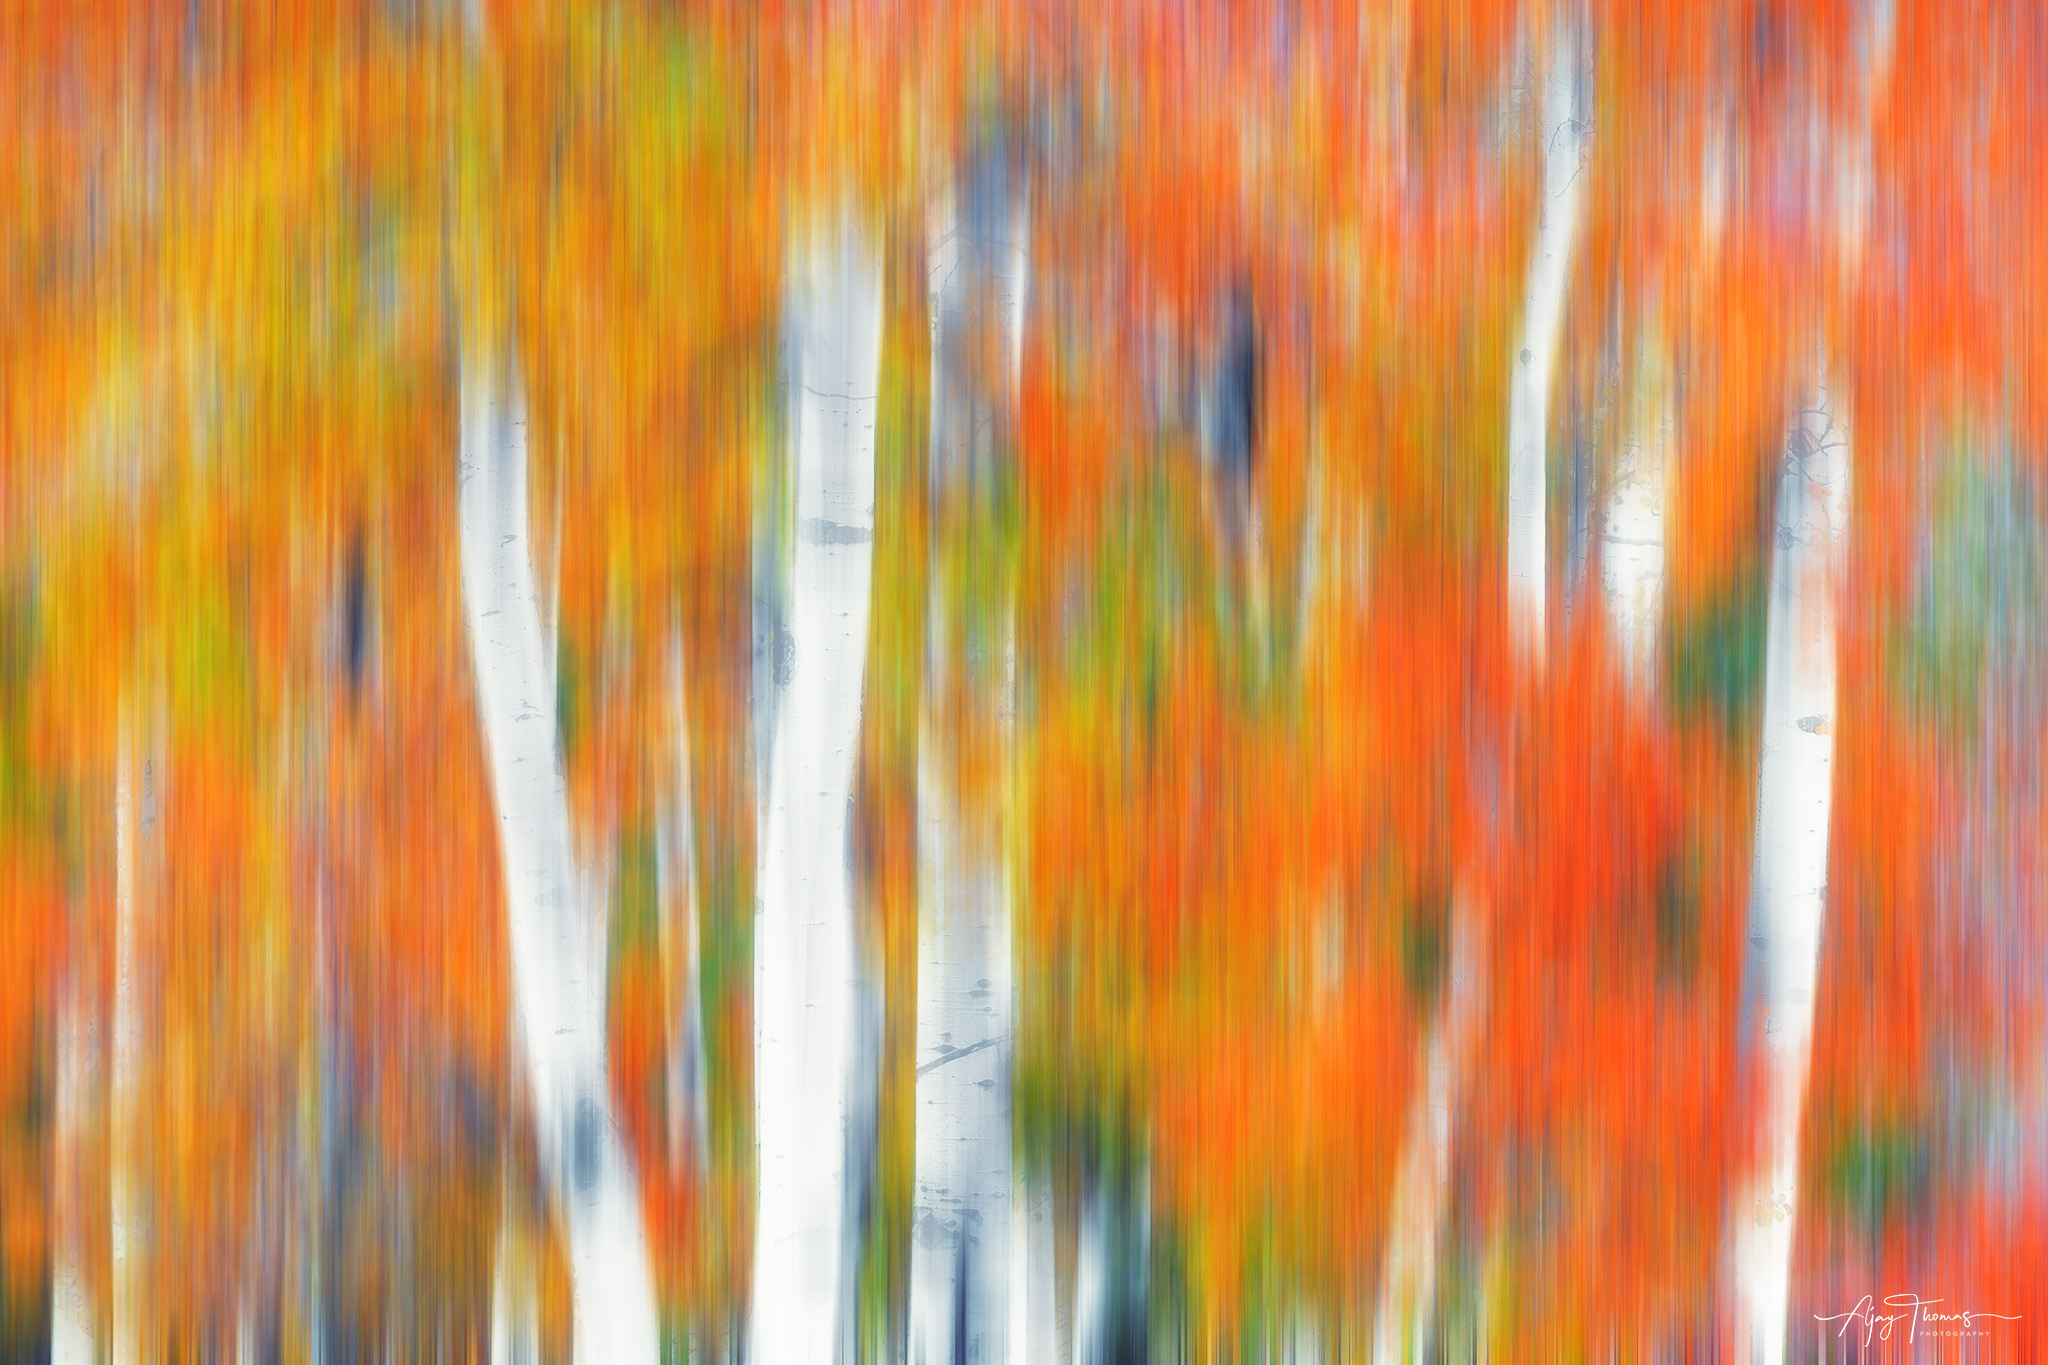 Autumn abstract